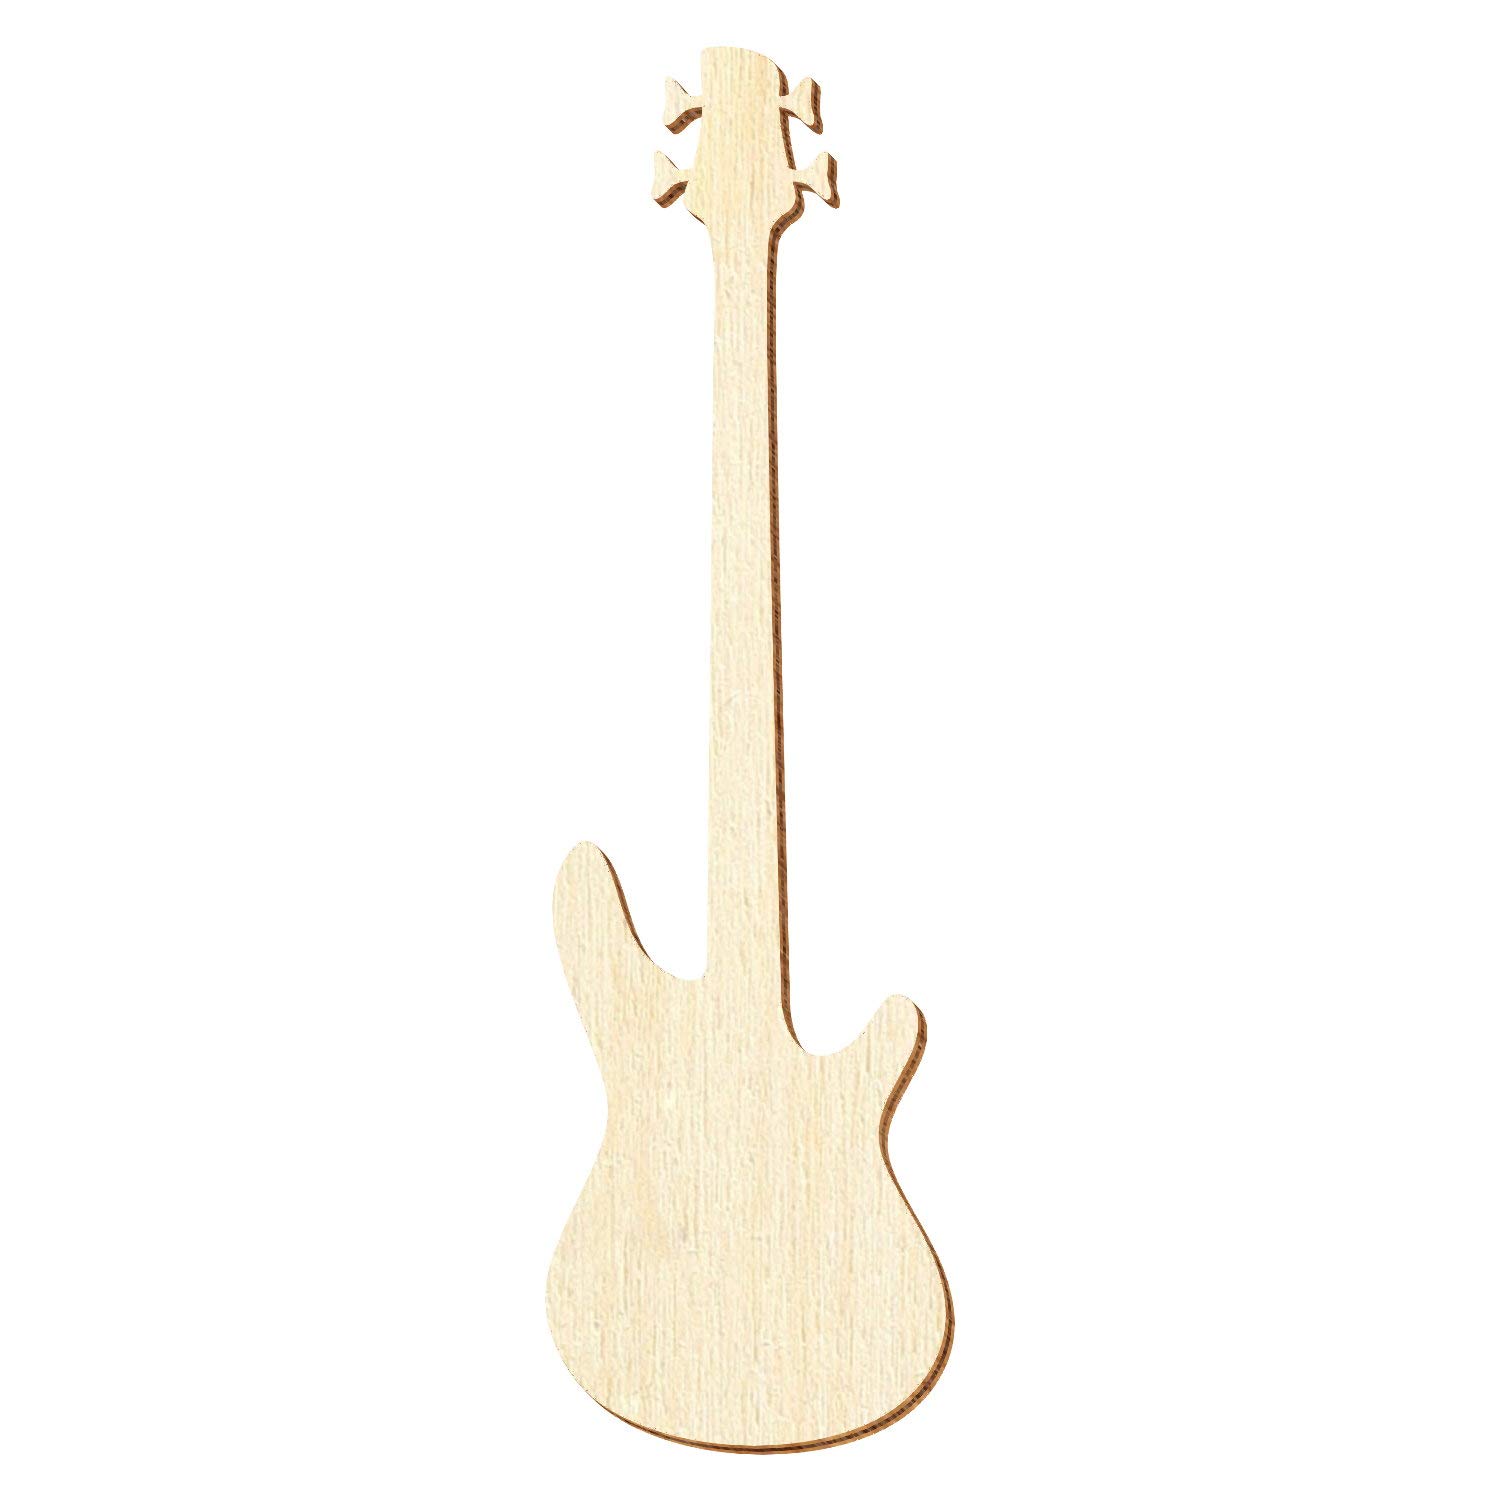 Holz Bassgitarre - Deko Zuschnitte Größenauswahl, Pack mit:25 Stück, Größe:32cm